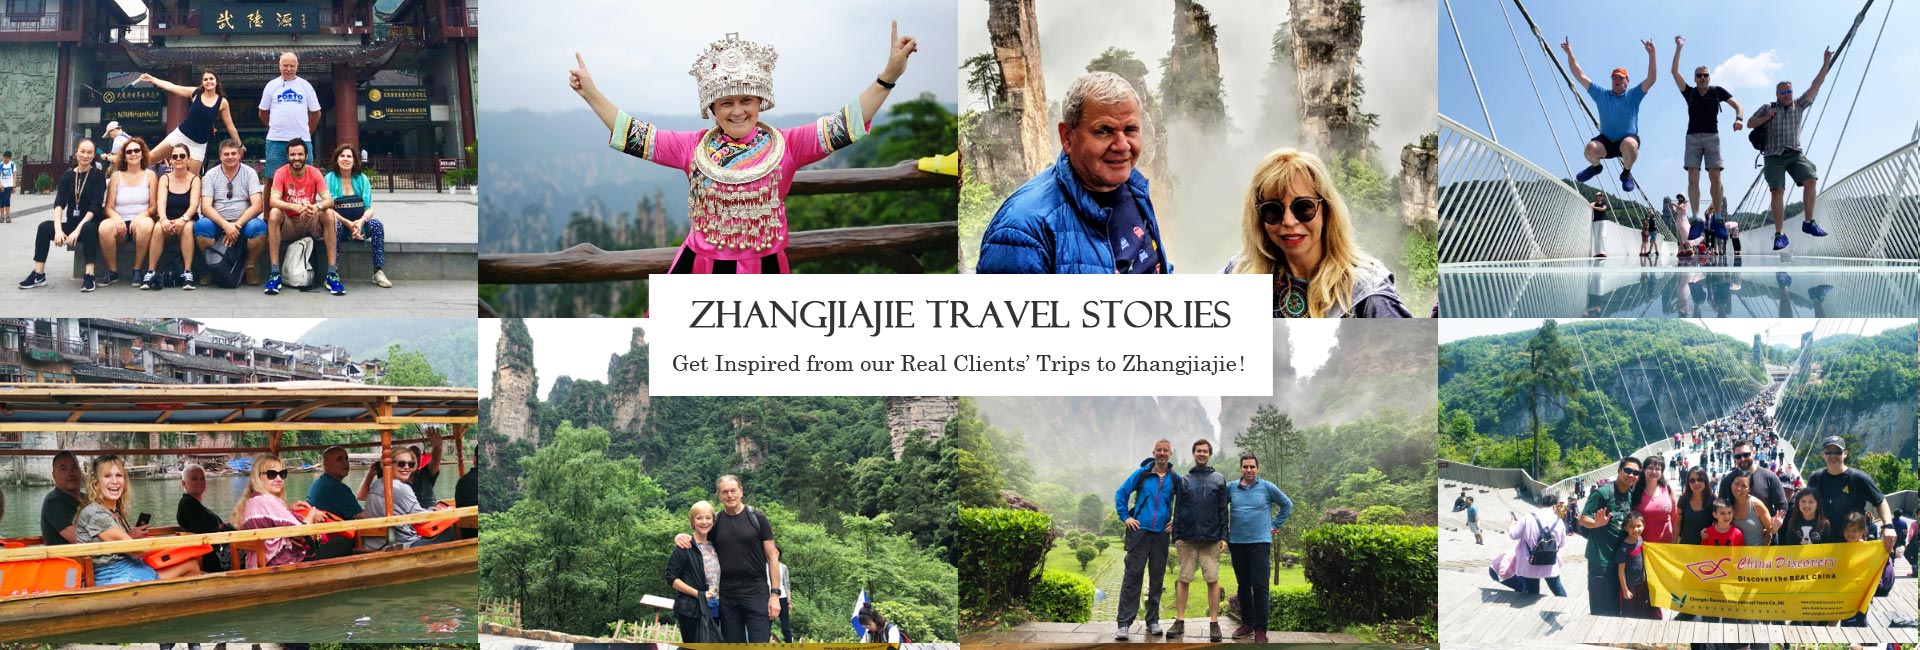 Zhangjiajie Travel Stories